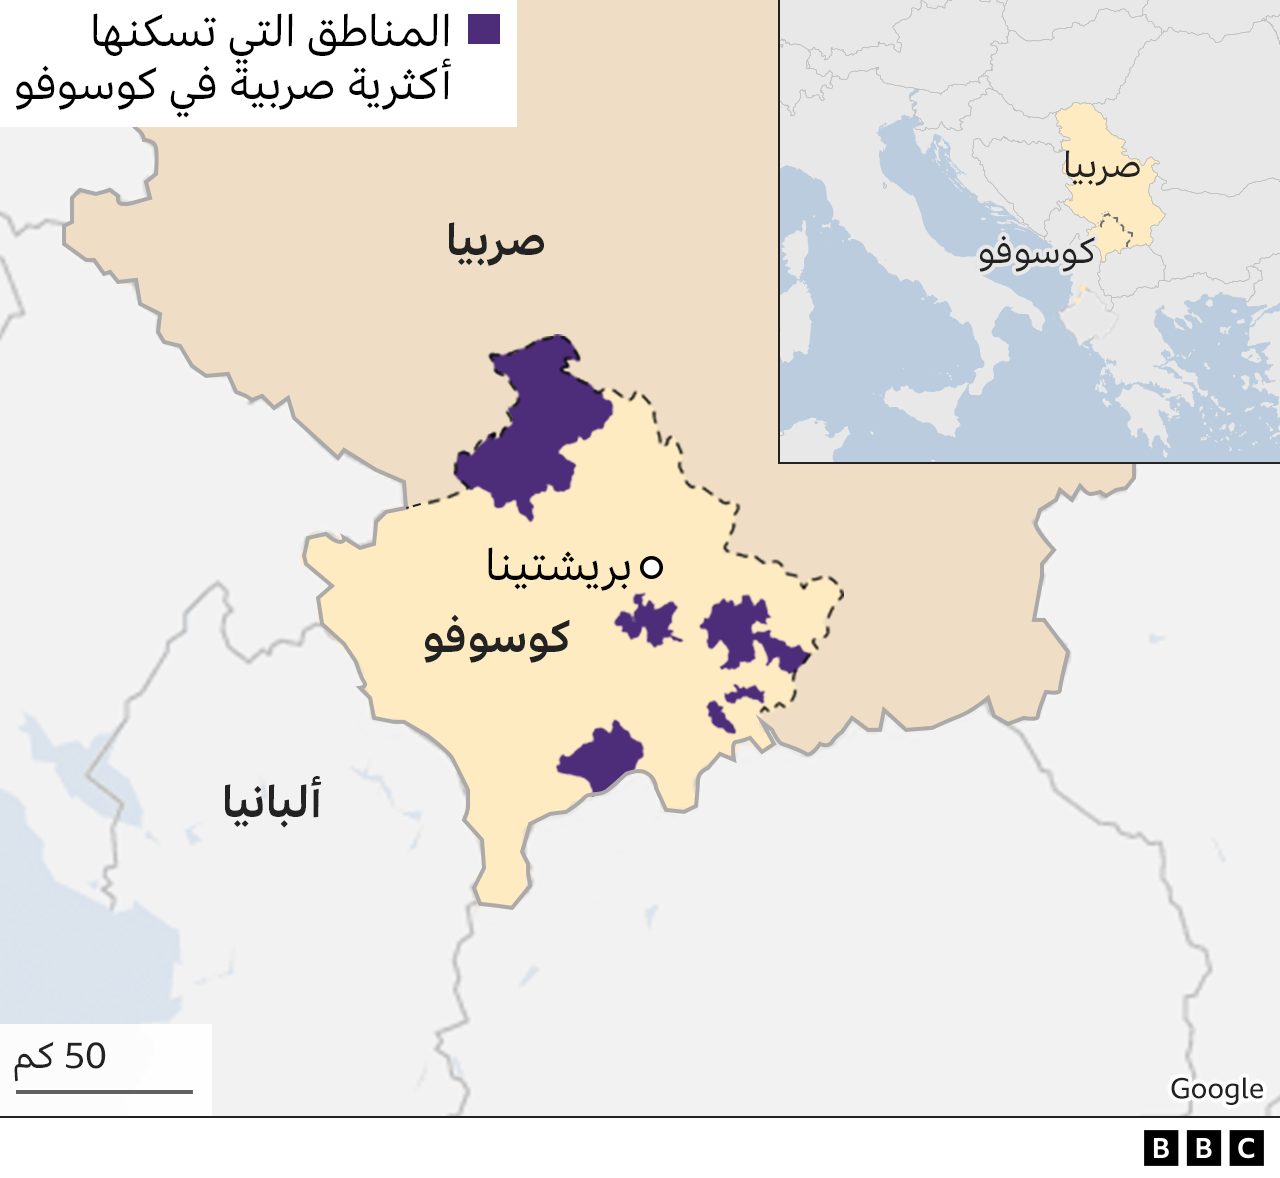 خريطة توضح مناطق كوسوفو التي يشكل فيها الصرب الأغلبية